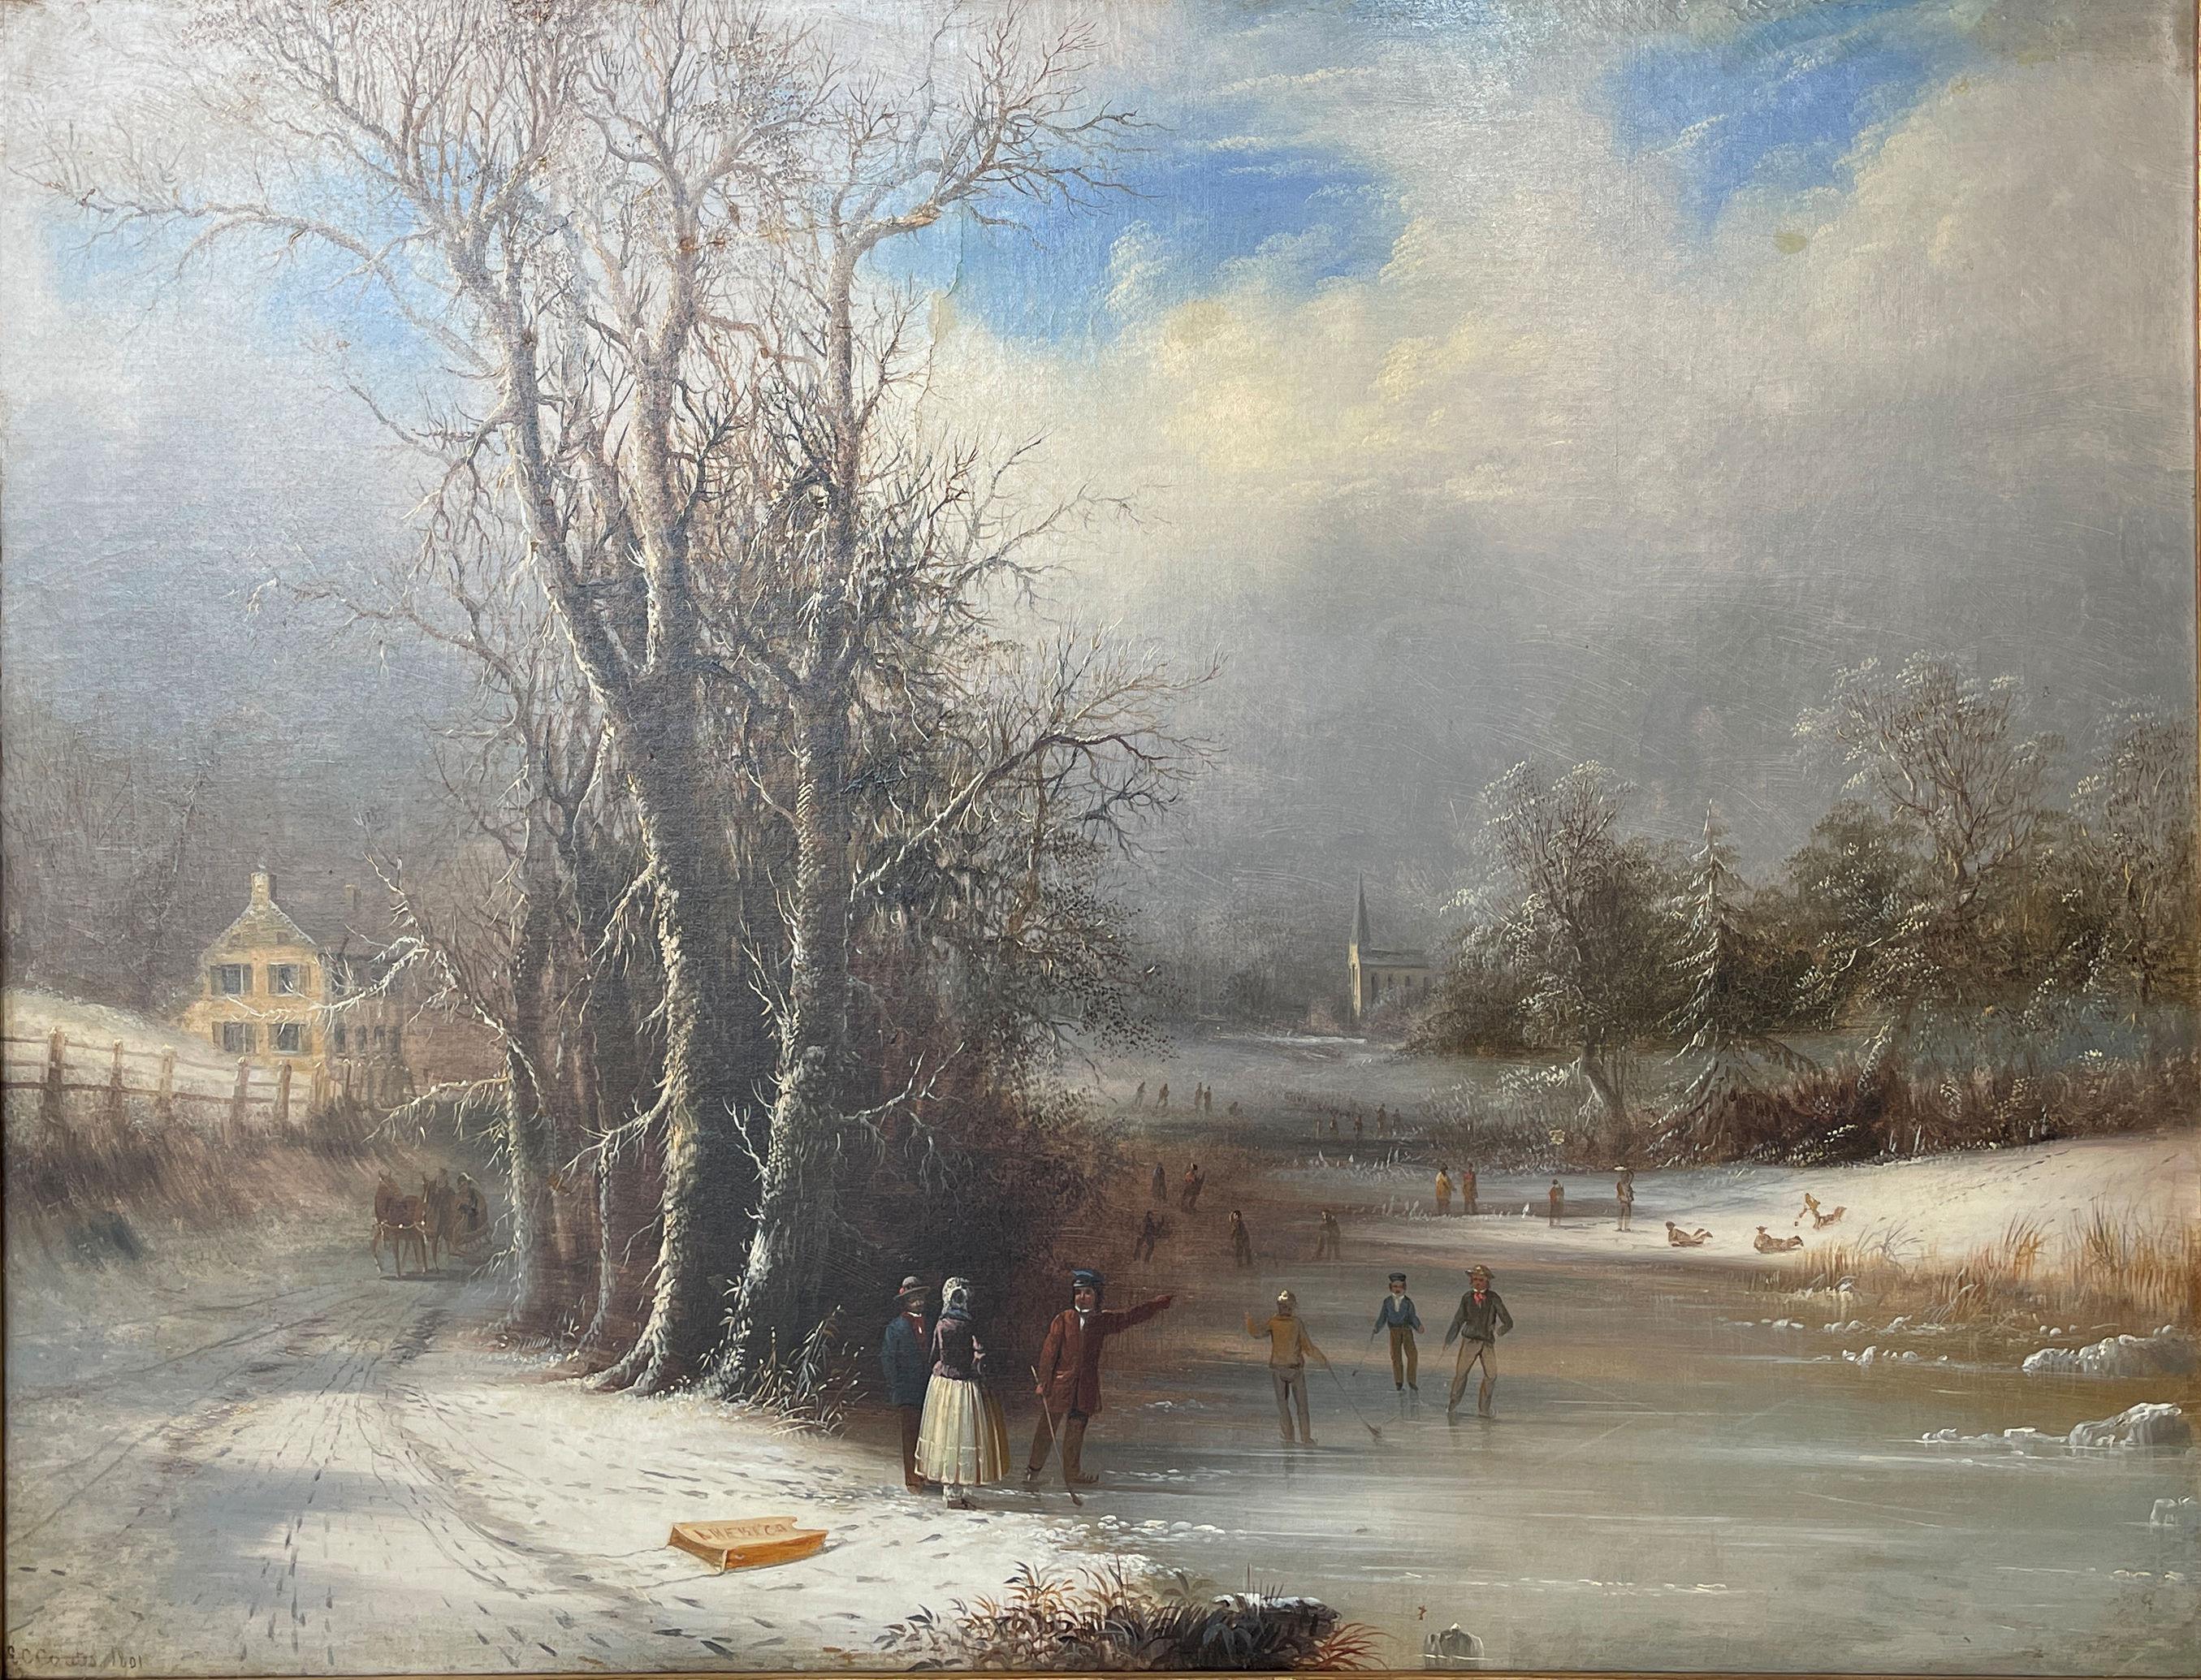 Edmund C. Coates Landscape Painting - "America, " Edmund Coates, Hudson River School, Civil War, Skaters Sled Landscape